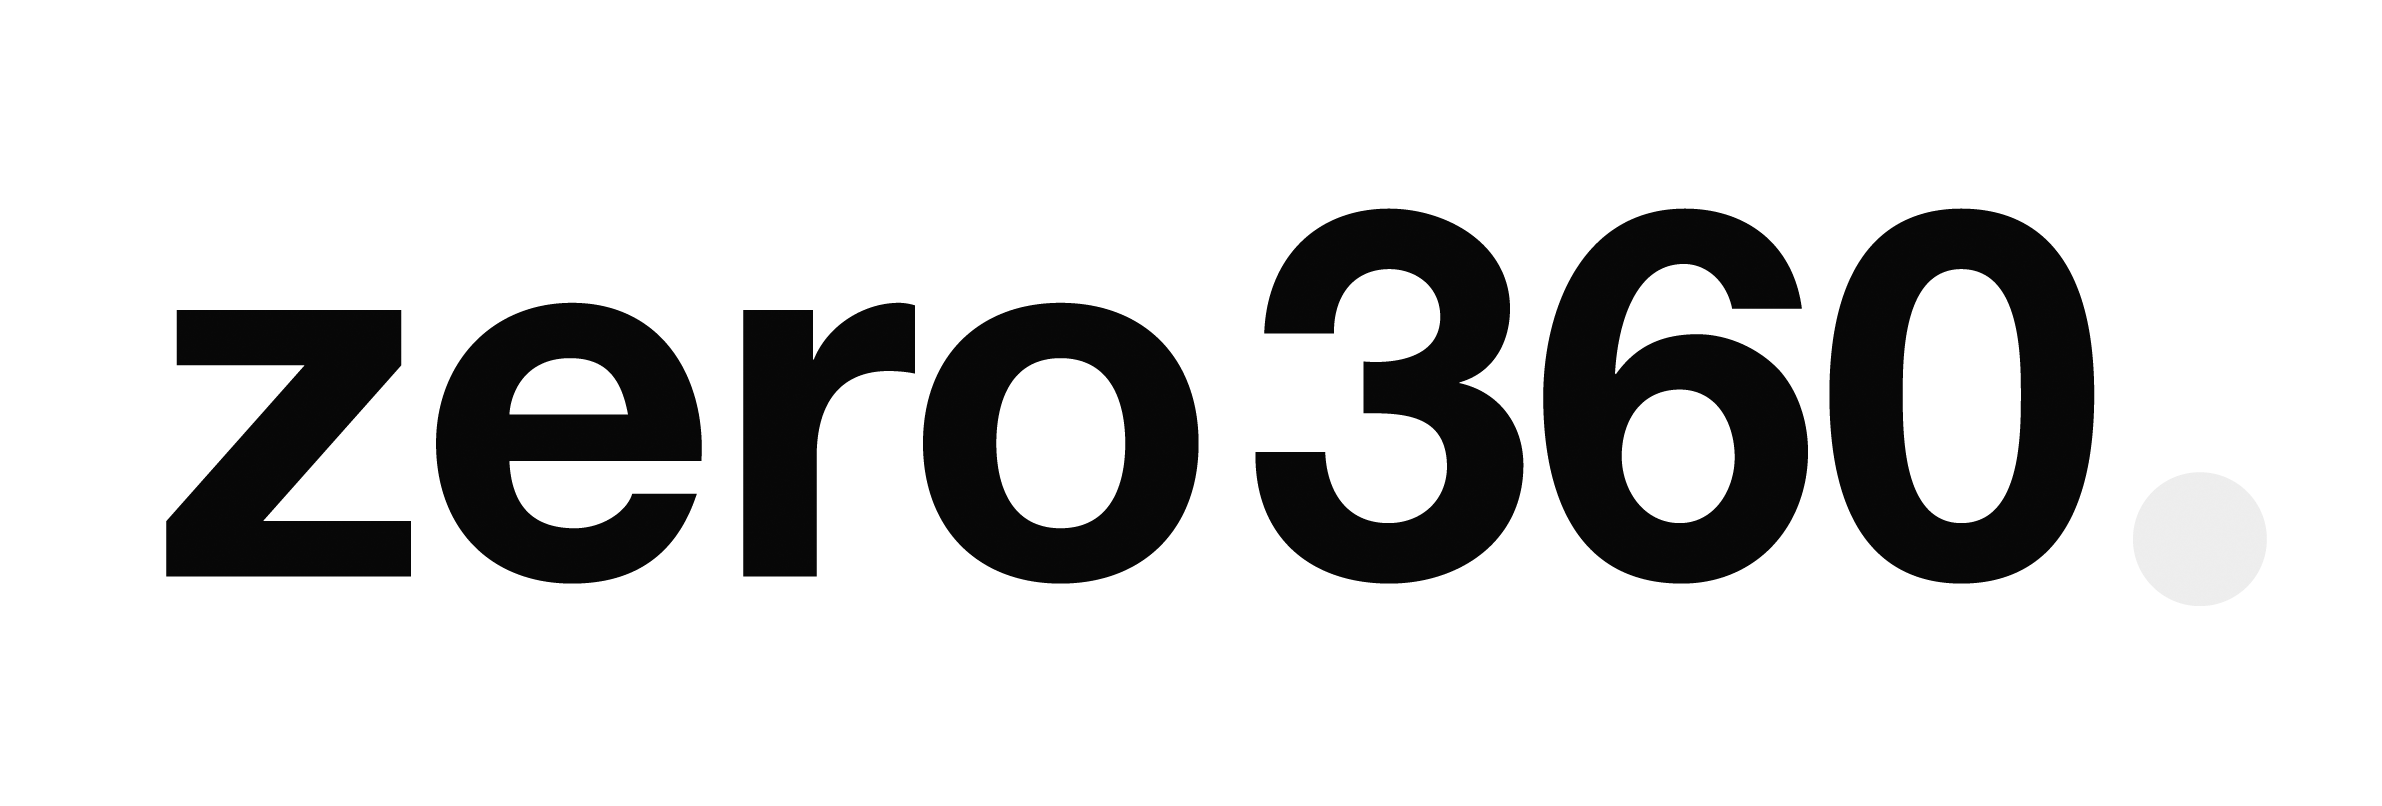 zero360.png